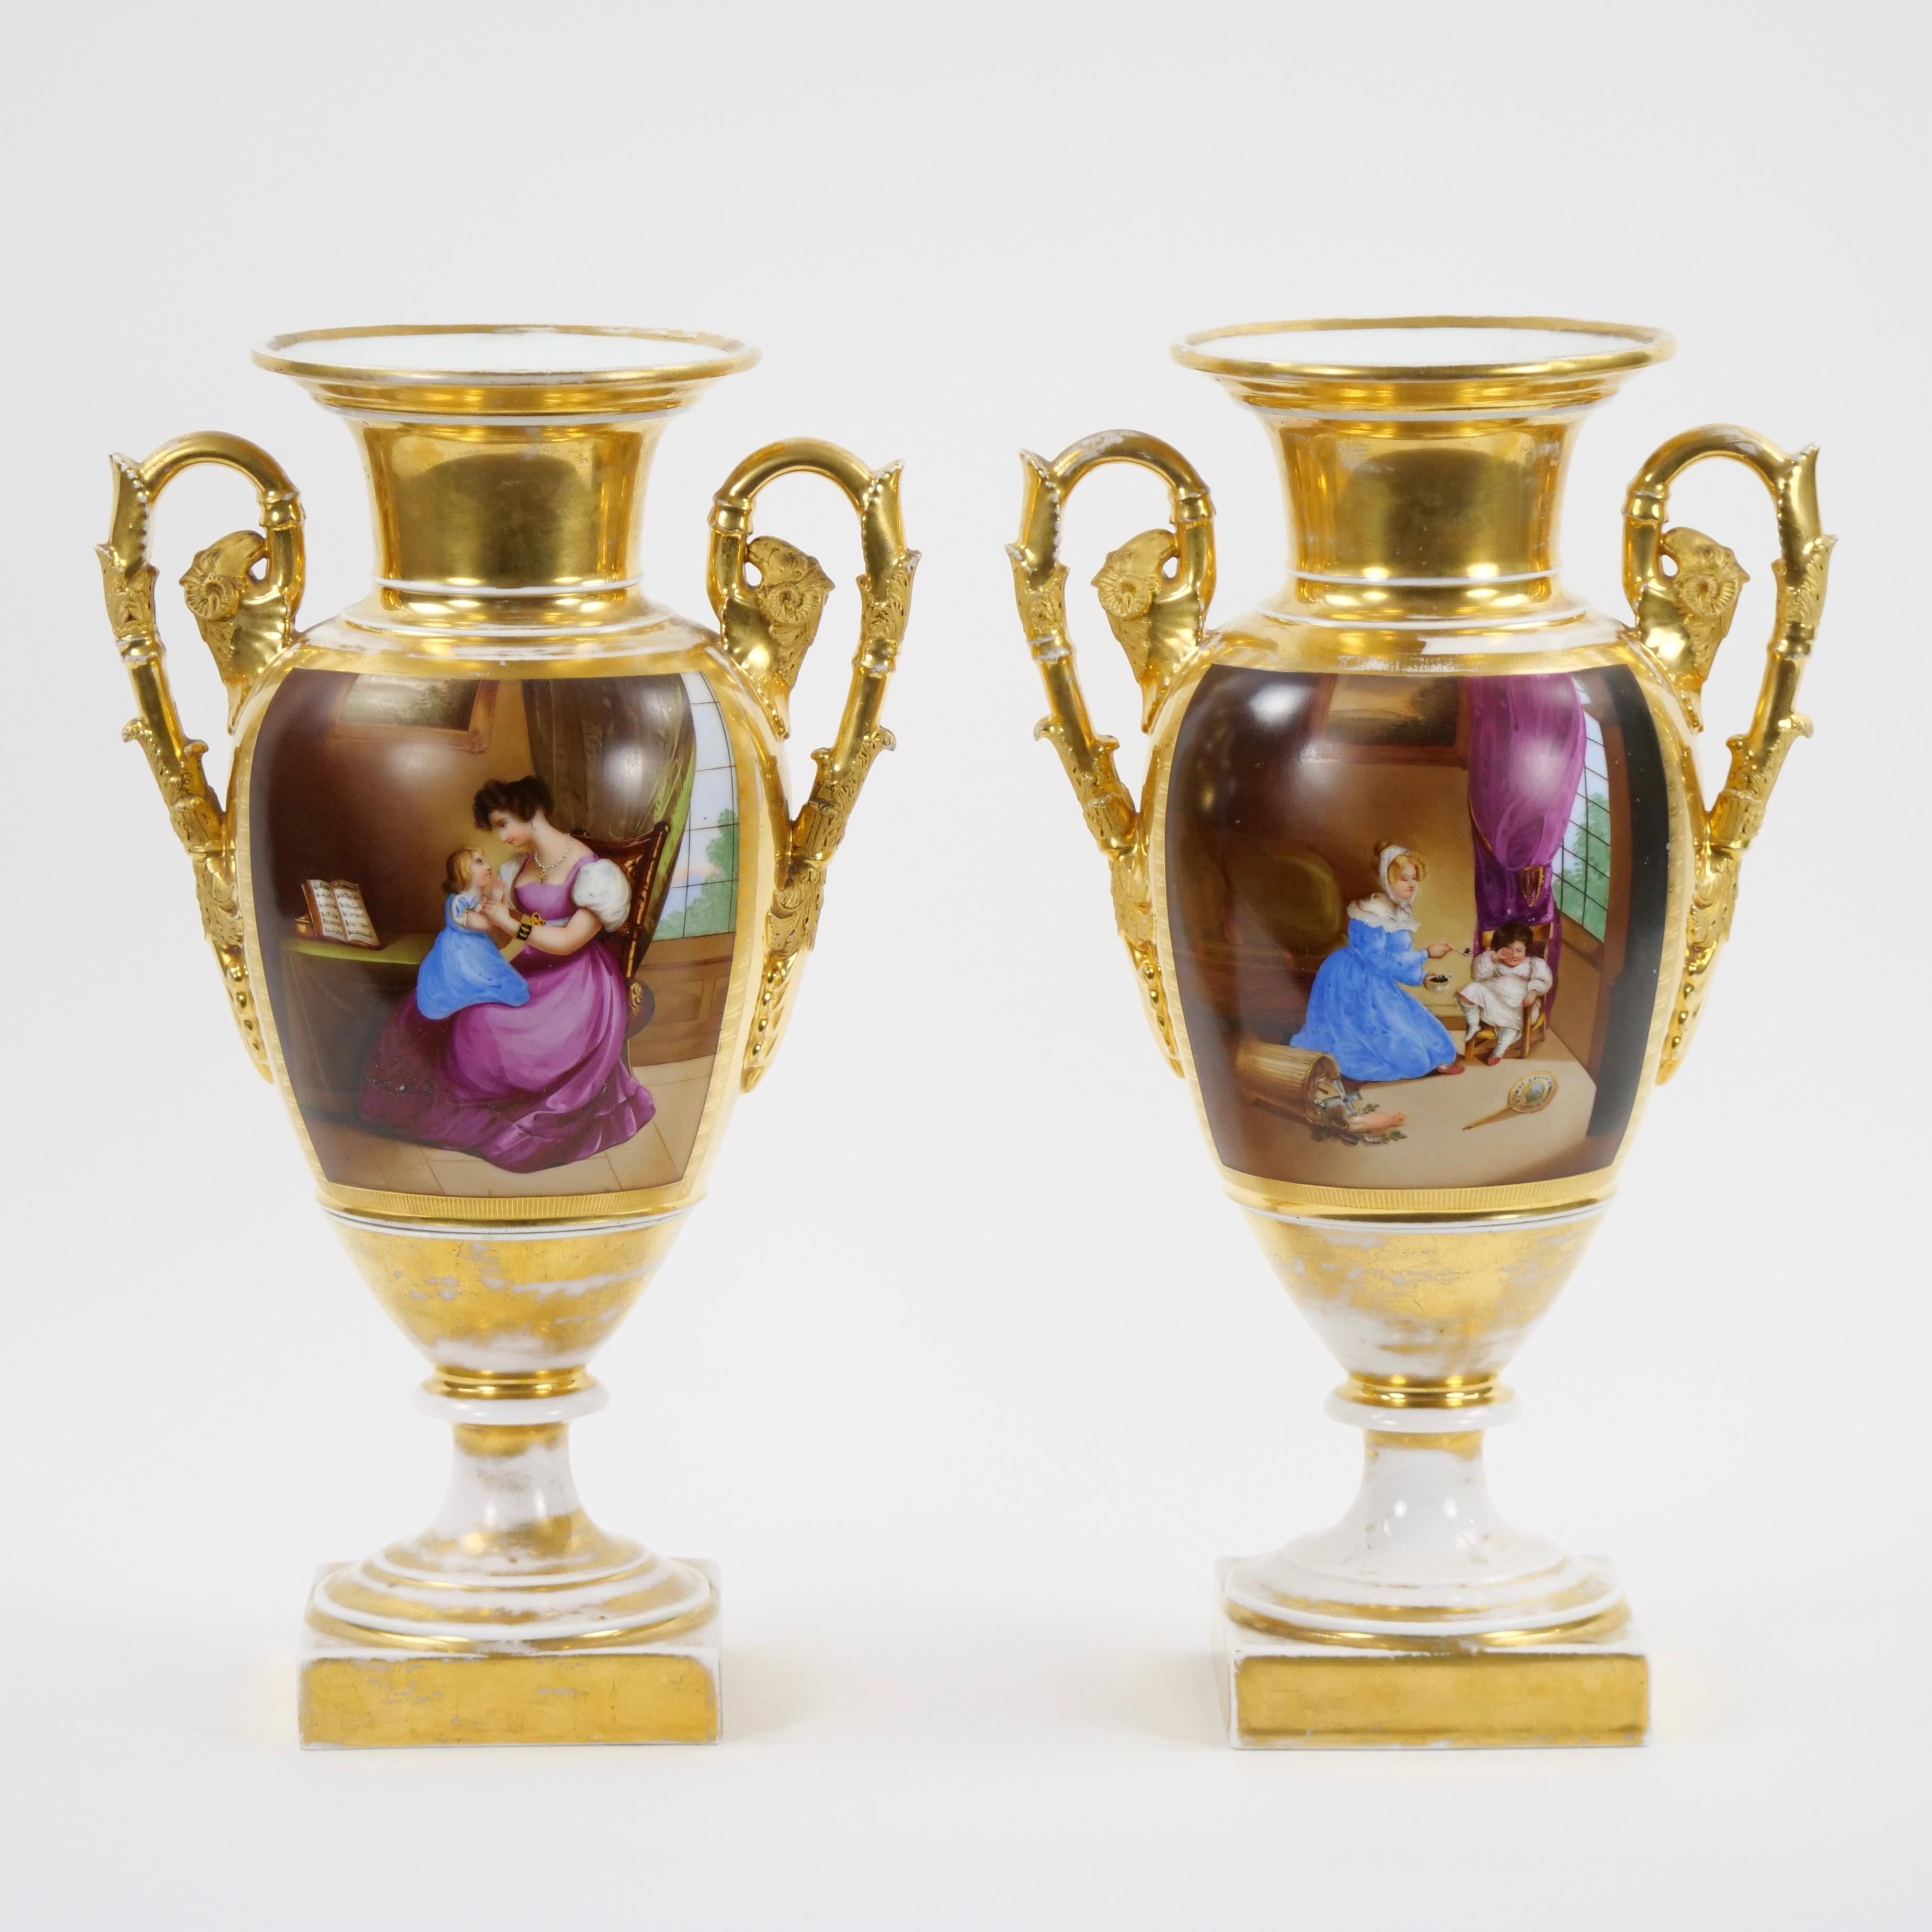 Découvrez l'élégance intemporelle d'une paire de vases en porcelaine de Paris du XIXe siècle, méticuleusement ornés d'exquises décorations dorées et peintes à la main. Ces vases incarnent le summum de l'artisanat d'art et du charme historique, vous